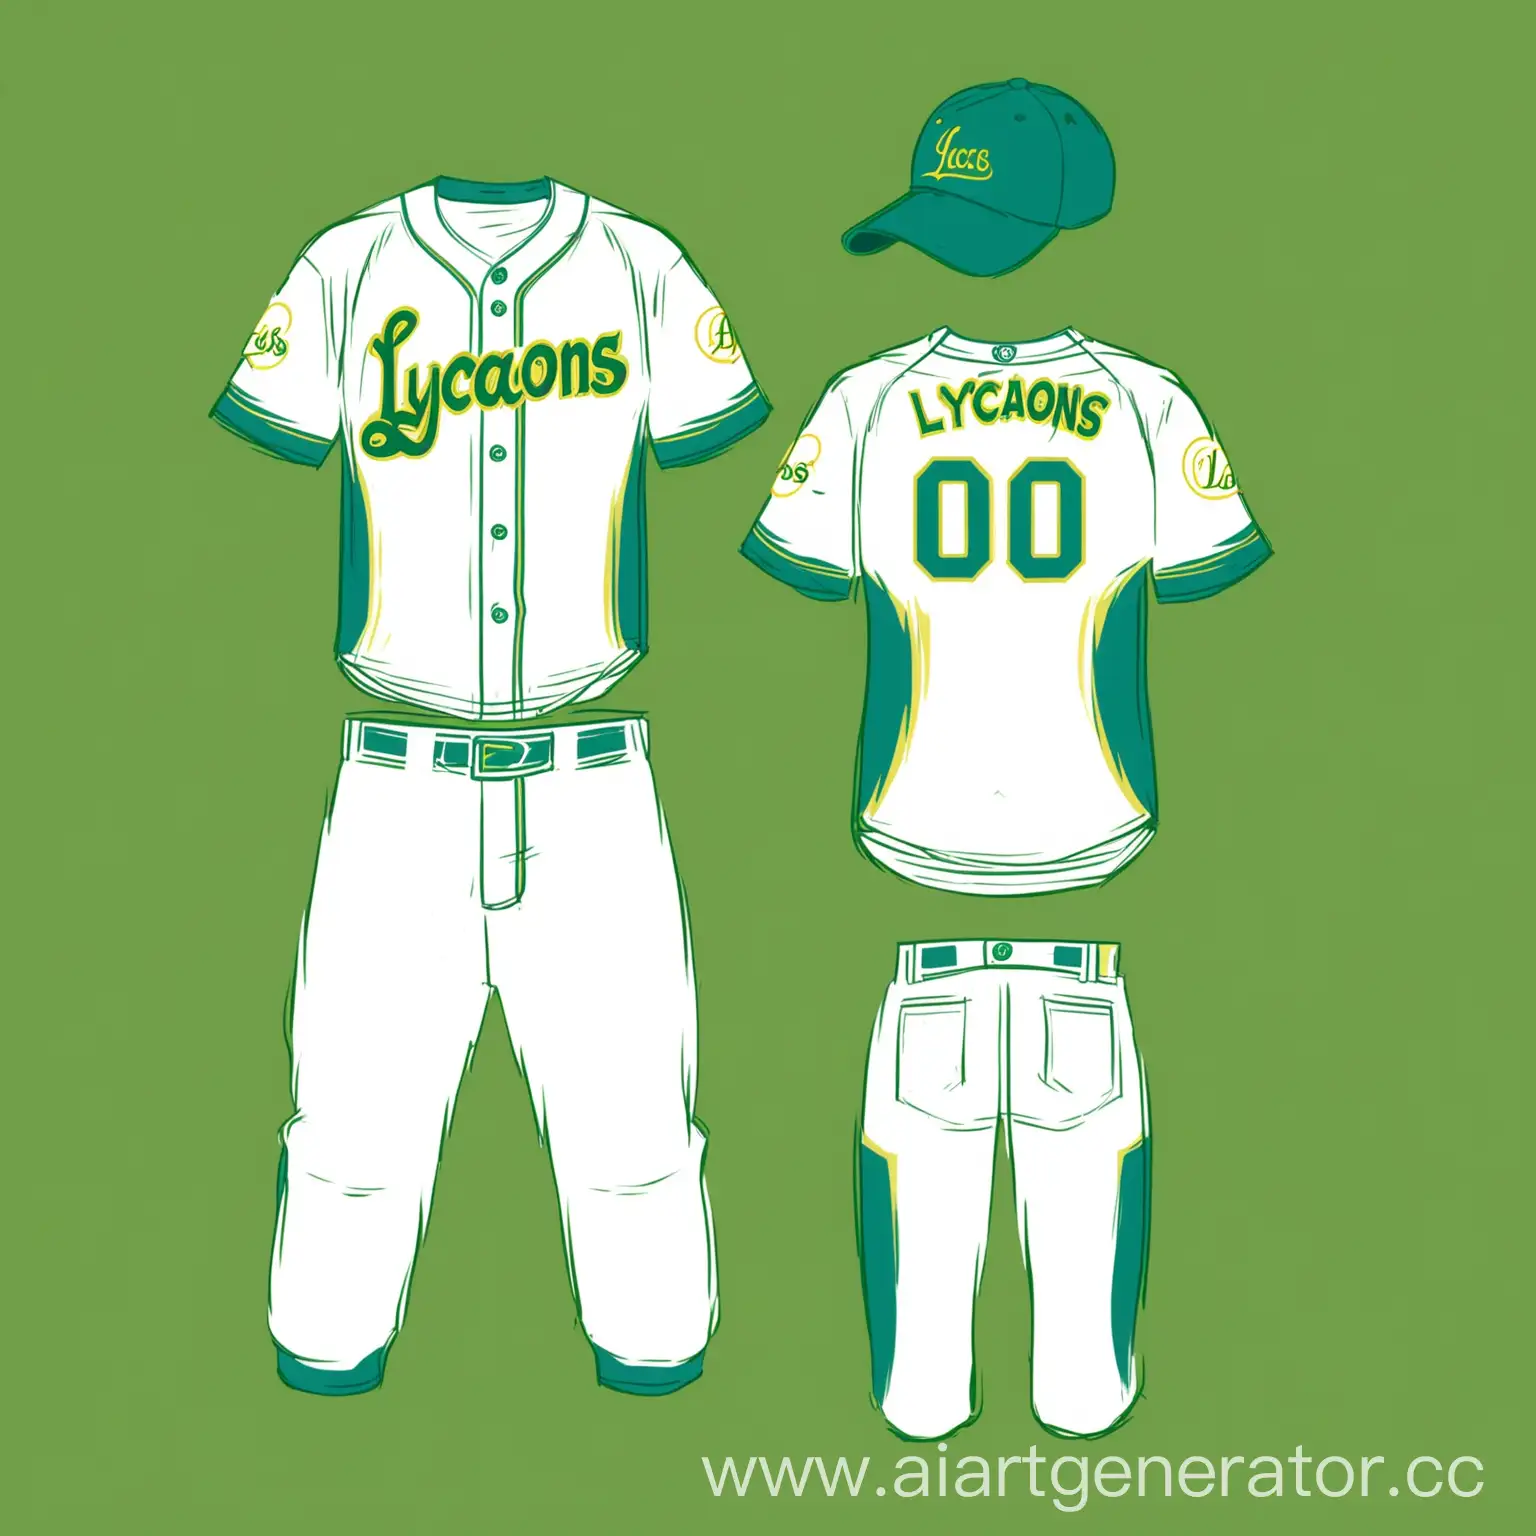 Бейсбольная форма белого цвета с логотипом "Lycaons" и акцентами жёлтого, зелёного, и синего цвета.